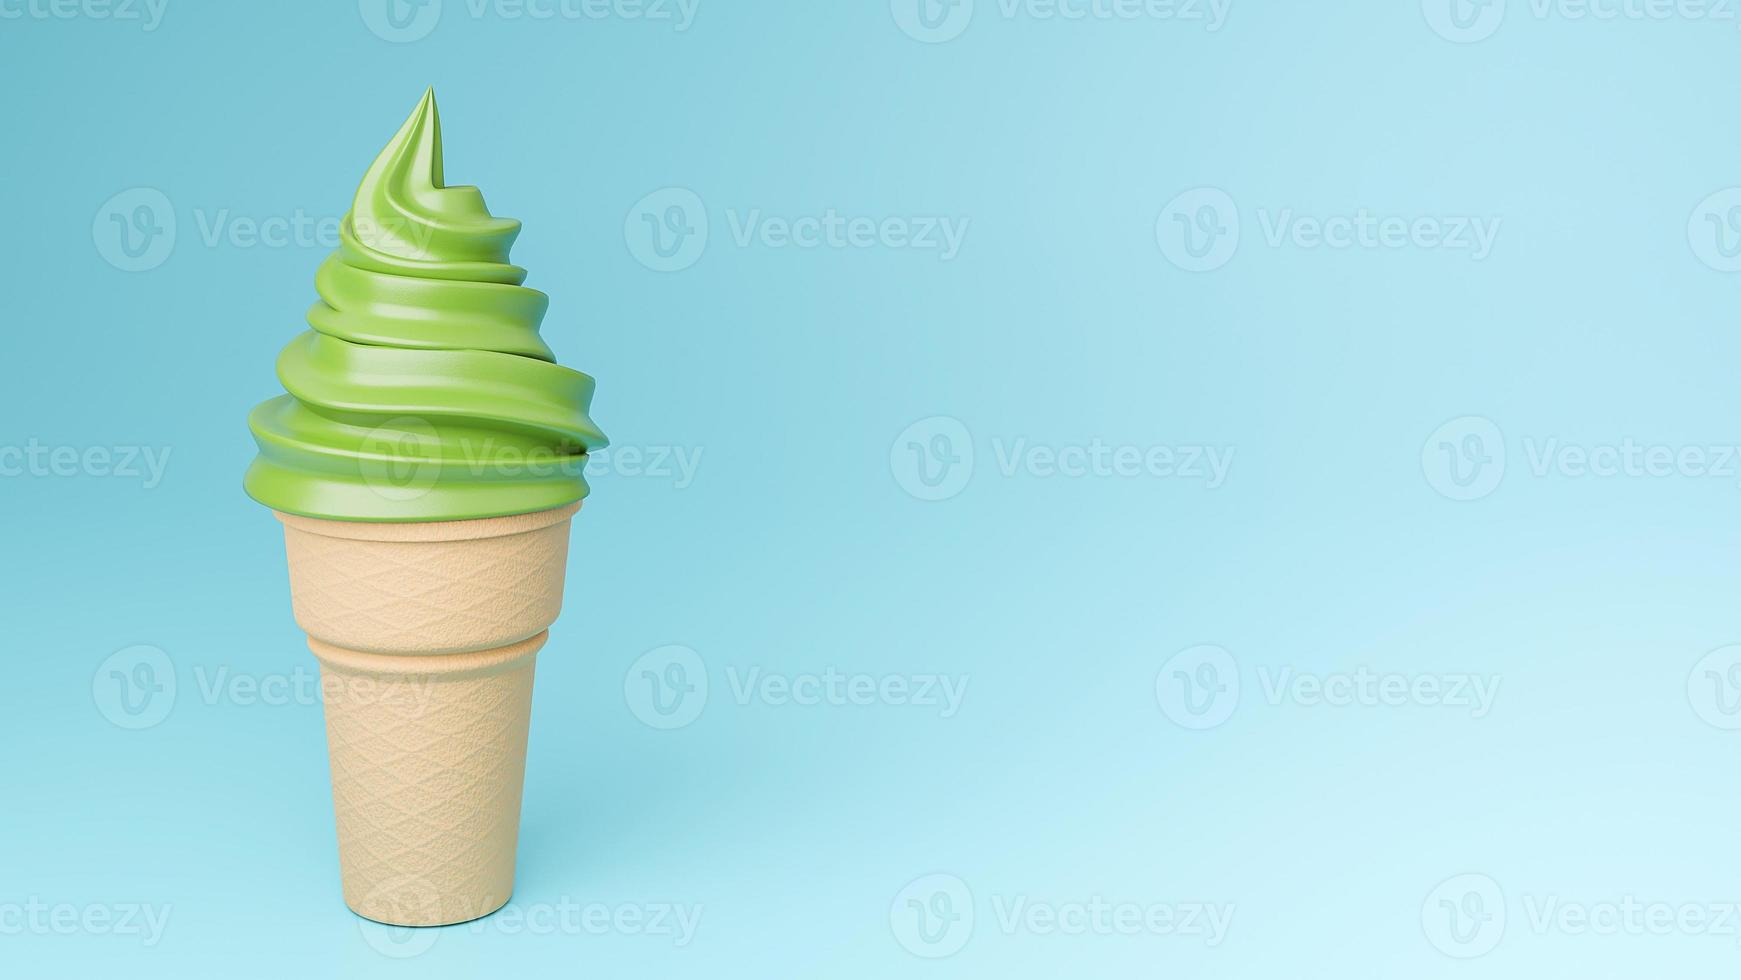 sorvete macio de sabores de chá verde no cone crocante sobre fundo azul., modelo 3d e ilustração. foto